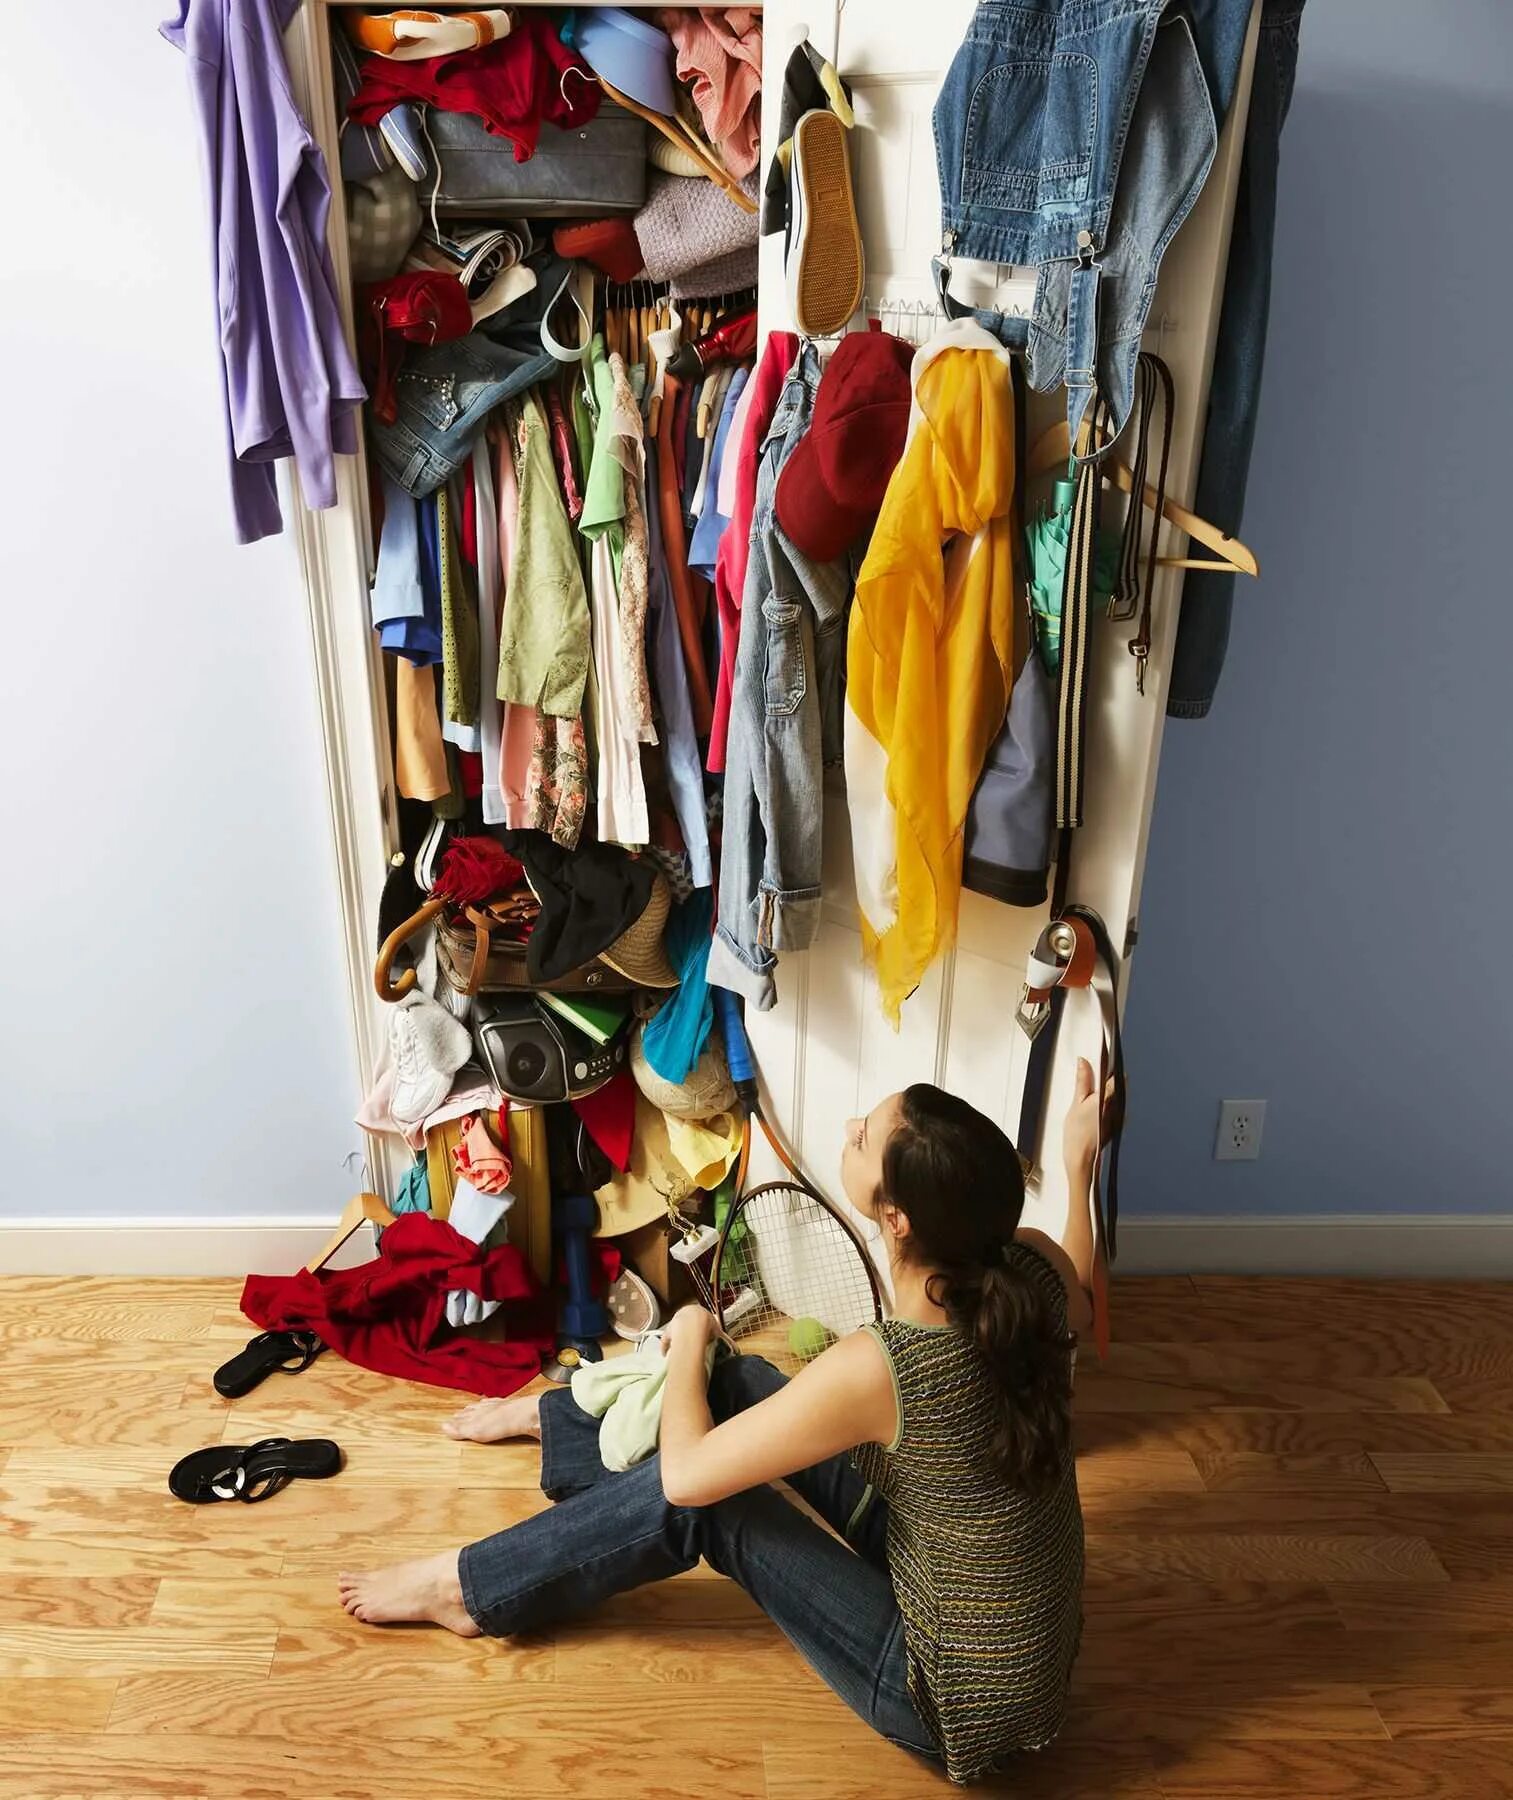 Шкаф для одежды. Переполненный шкаф с одеждой. Бардак в шкафу с одеждой. Куча вещей.